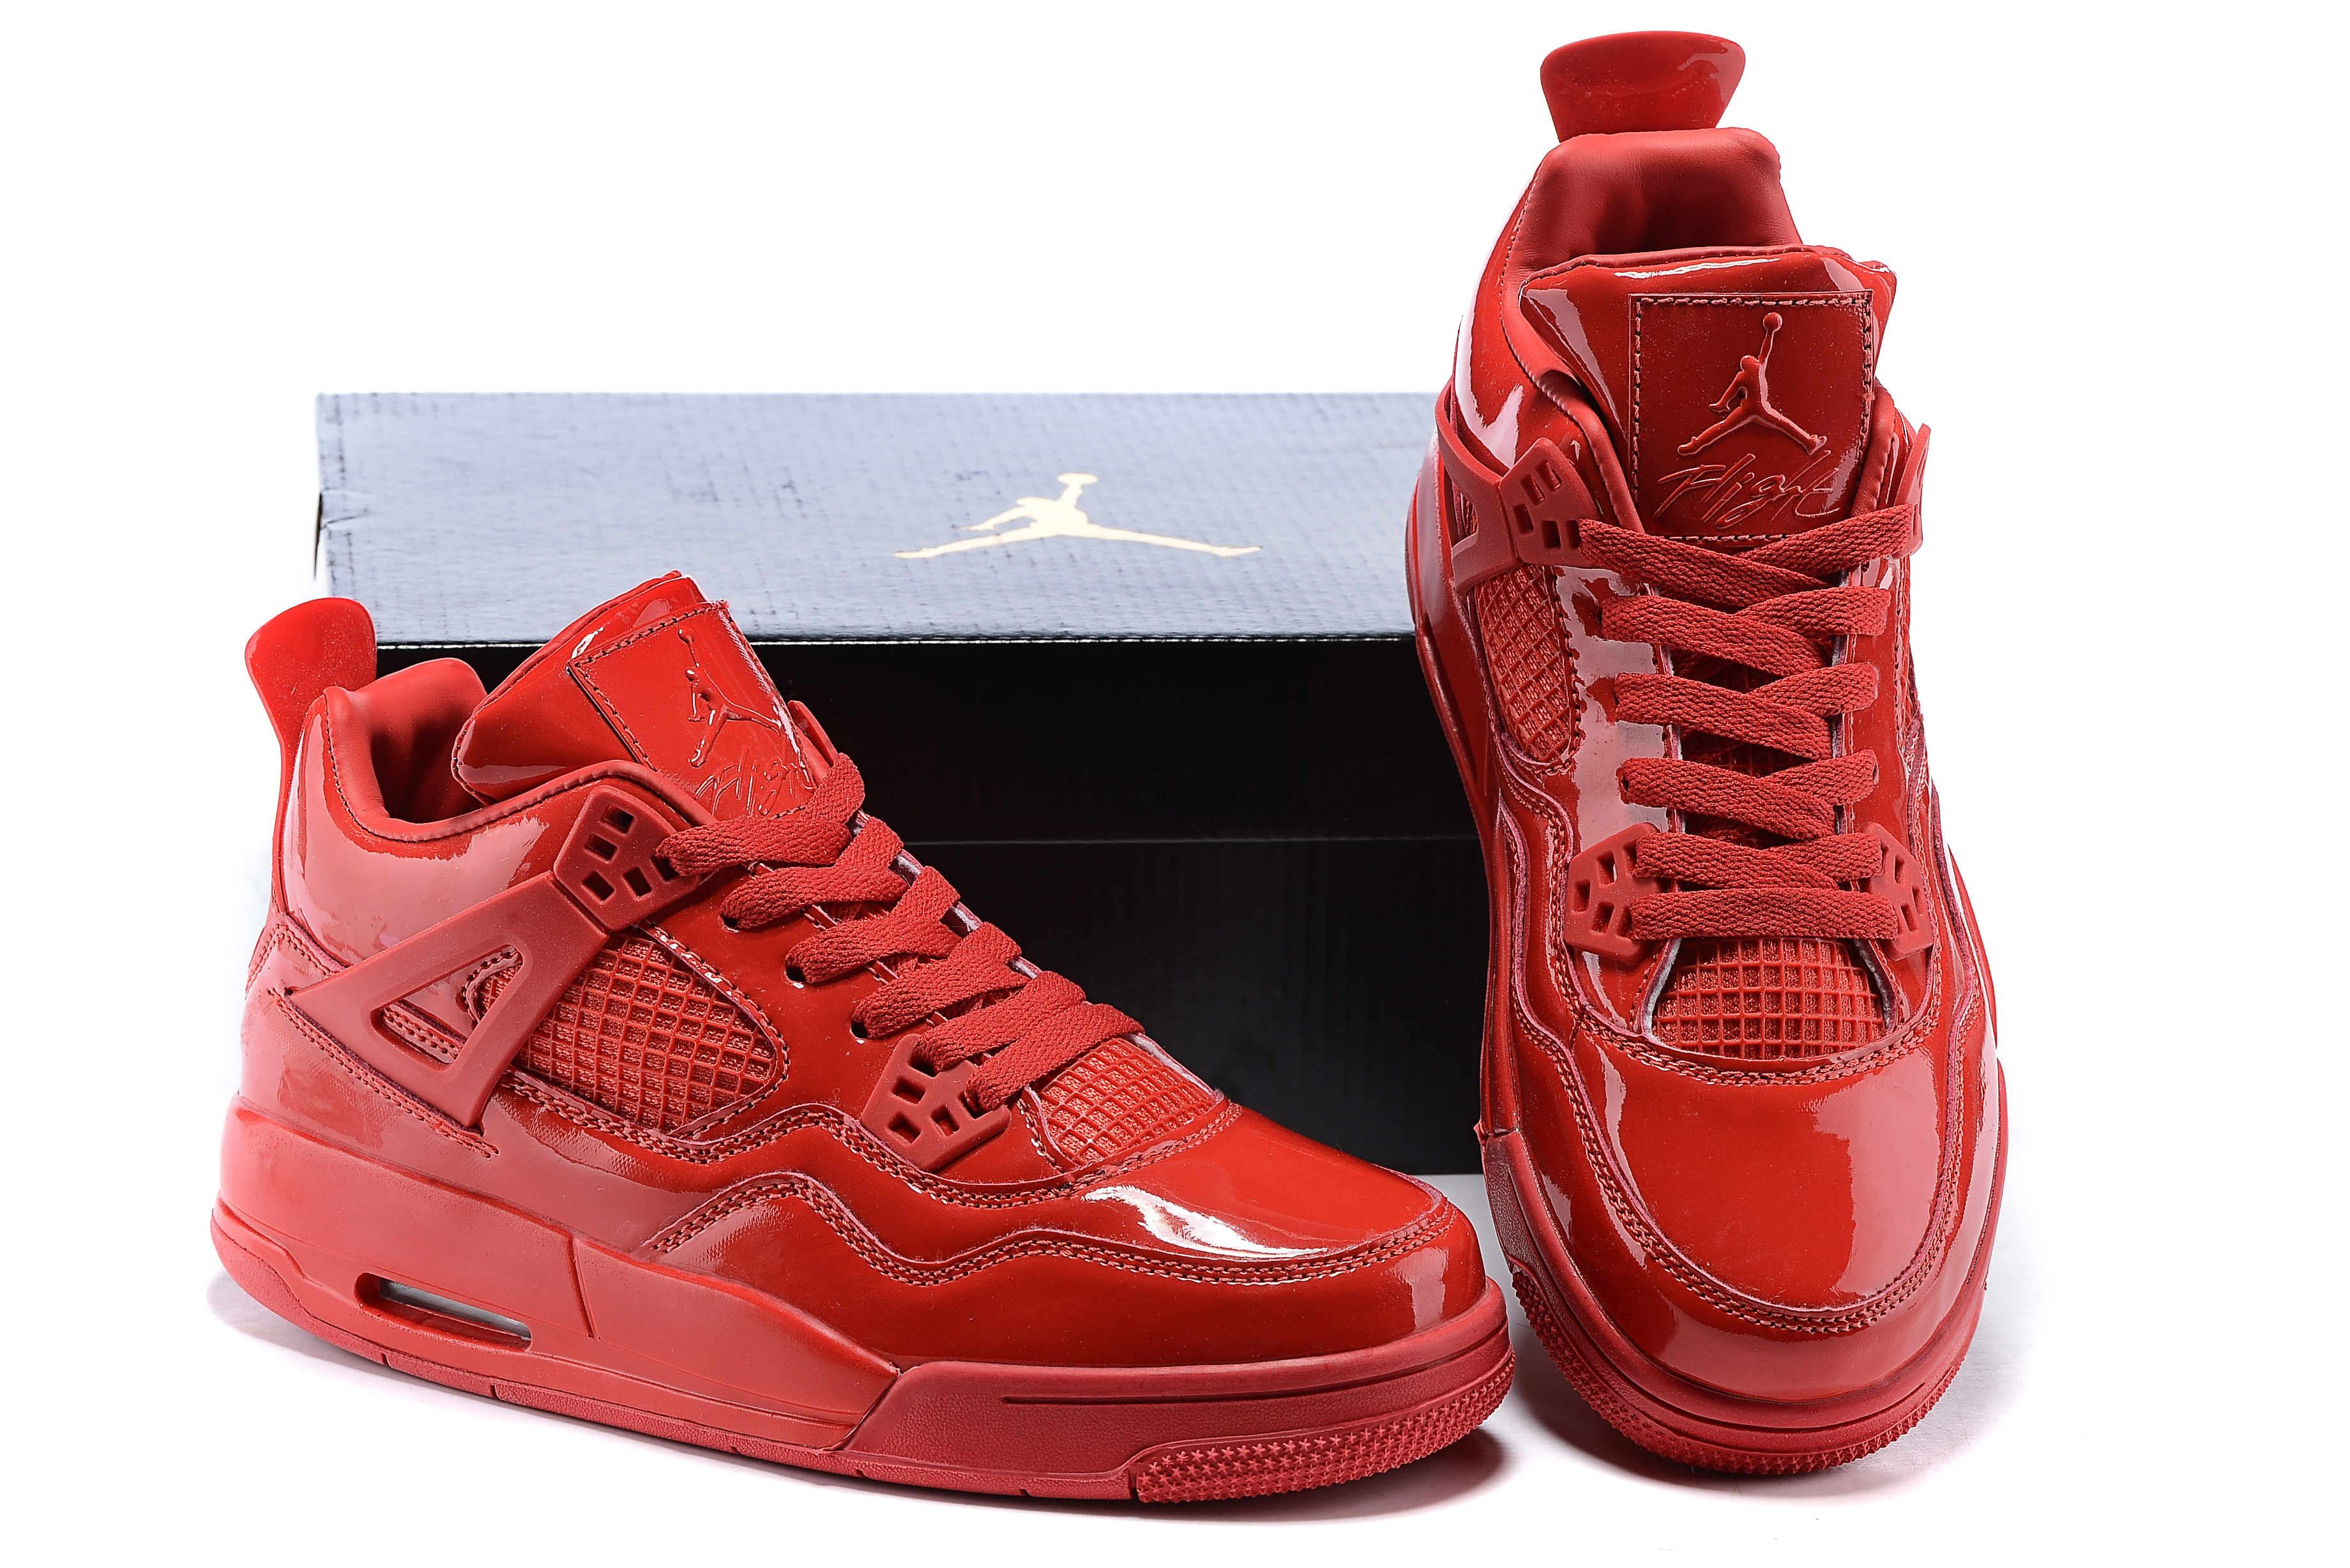 Nike jordan 4 red. Air Jordan 4 Retro 11lab4 Red. Air Jordan 4 Red. Nike Air Jordan 4 Red глянцевые. Air Jordan 4 11lab4.